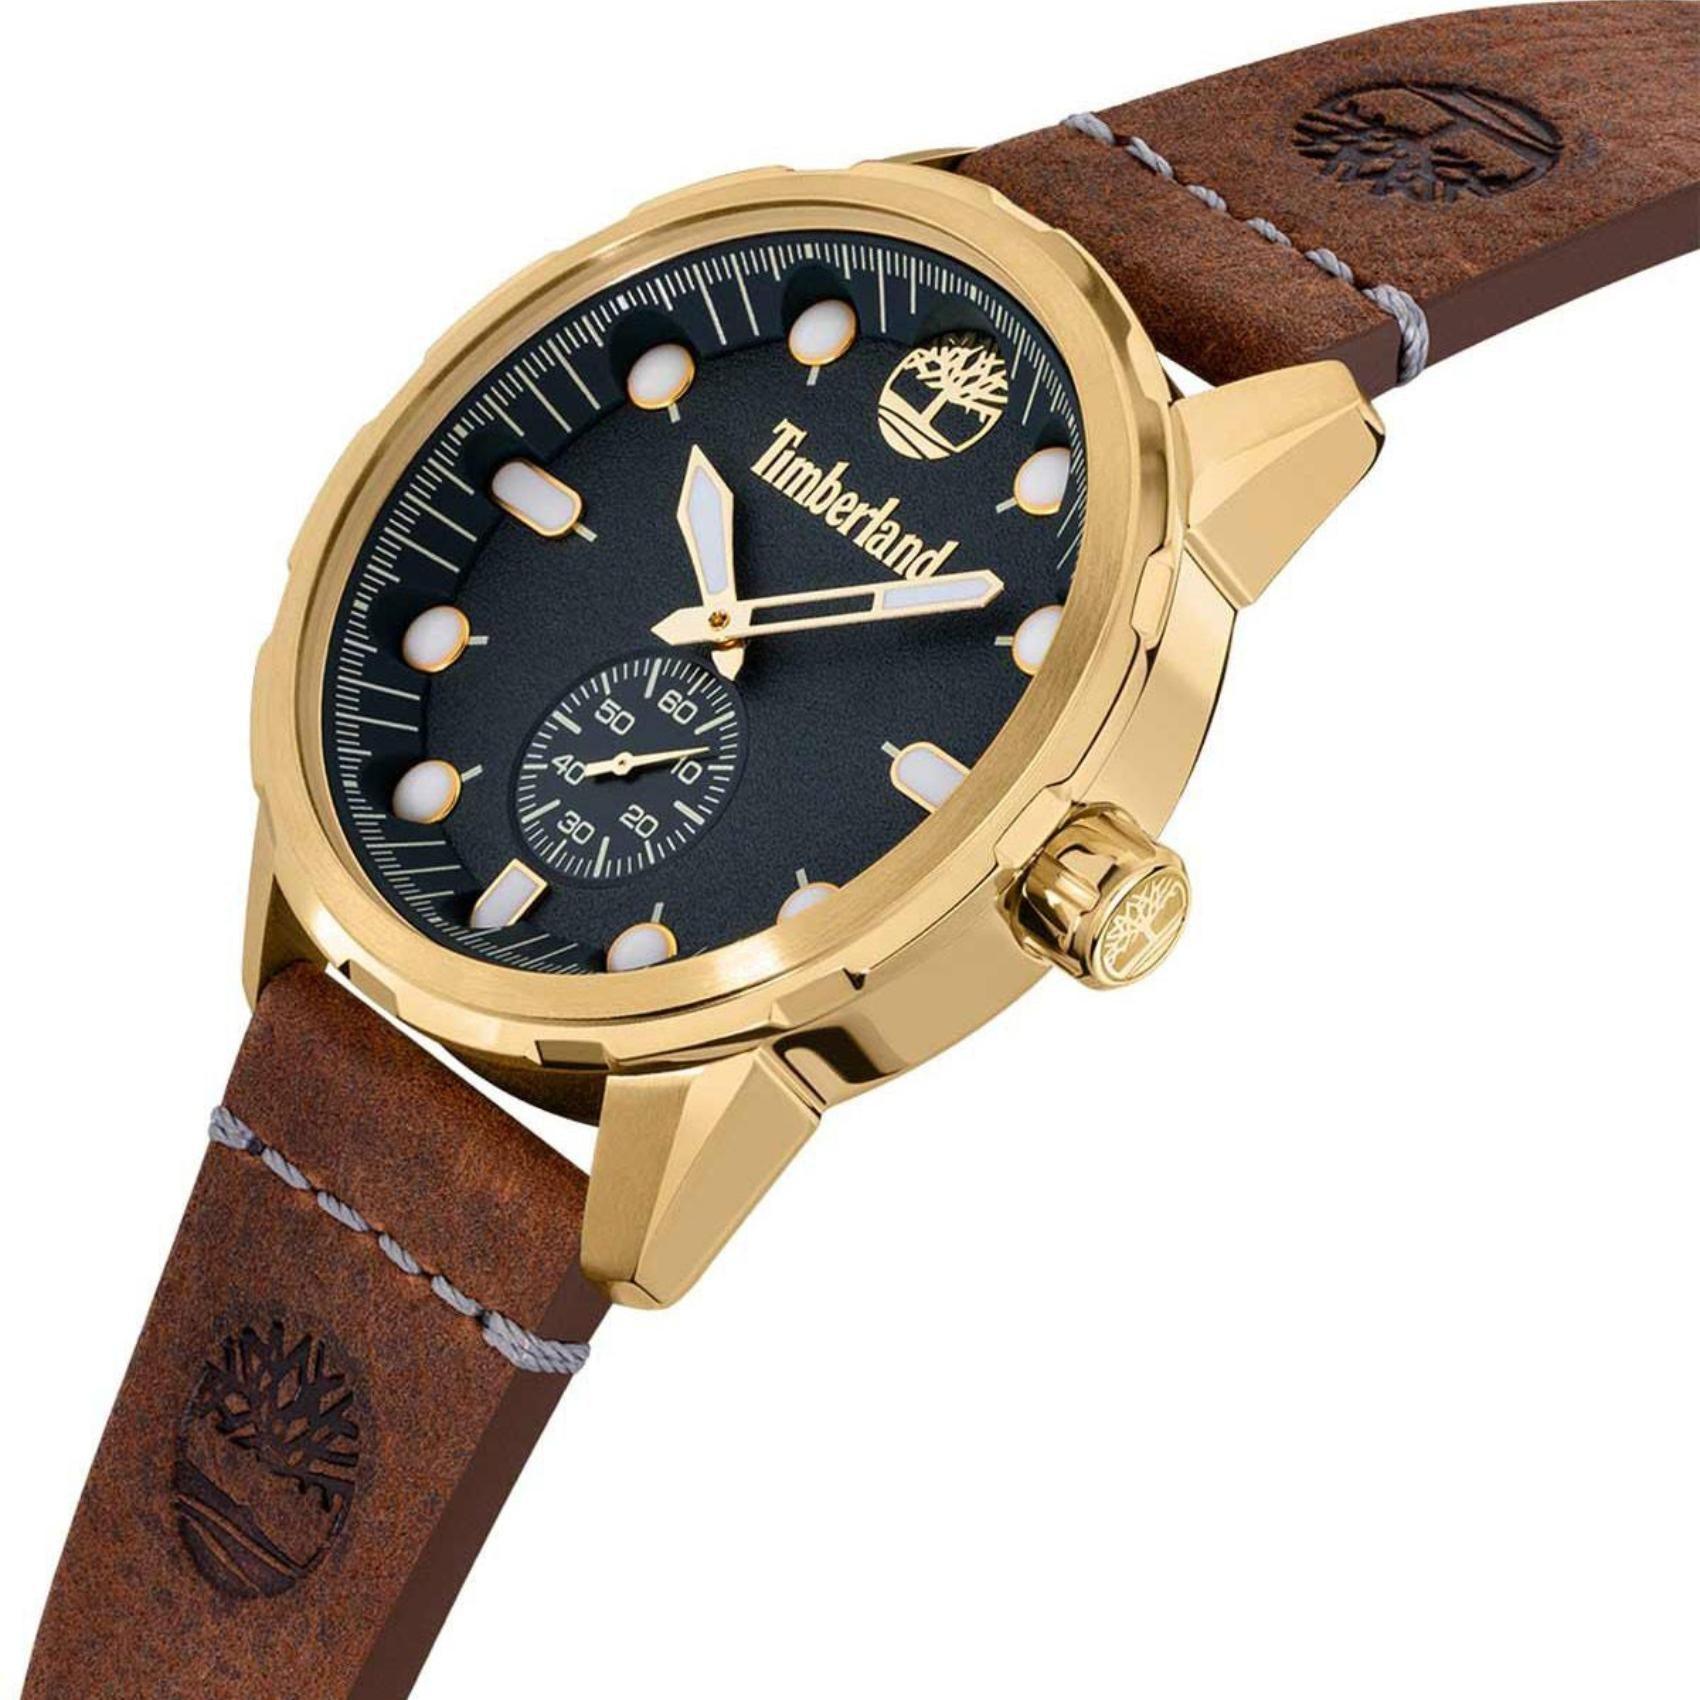 Αντρικό ρολόι Timberland Adirondack TDWGA0028502 με καφέ δερμάτινο λουράκι και μπλε καντράν διαμέτρου 46mm με ημερομηνία.